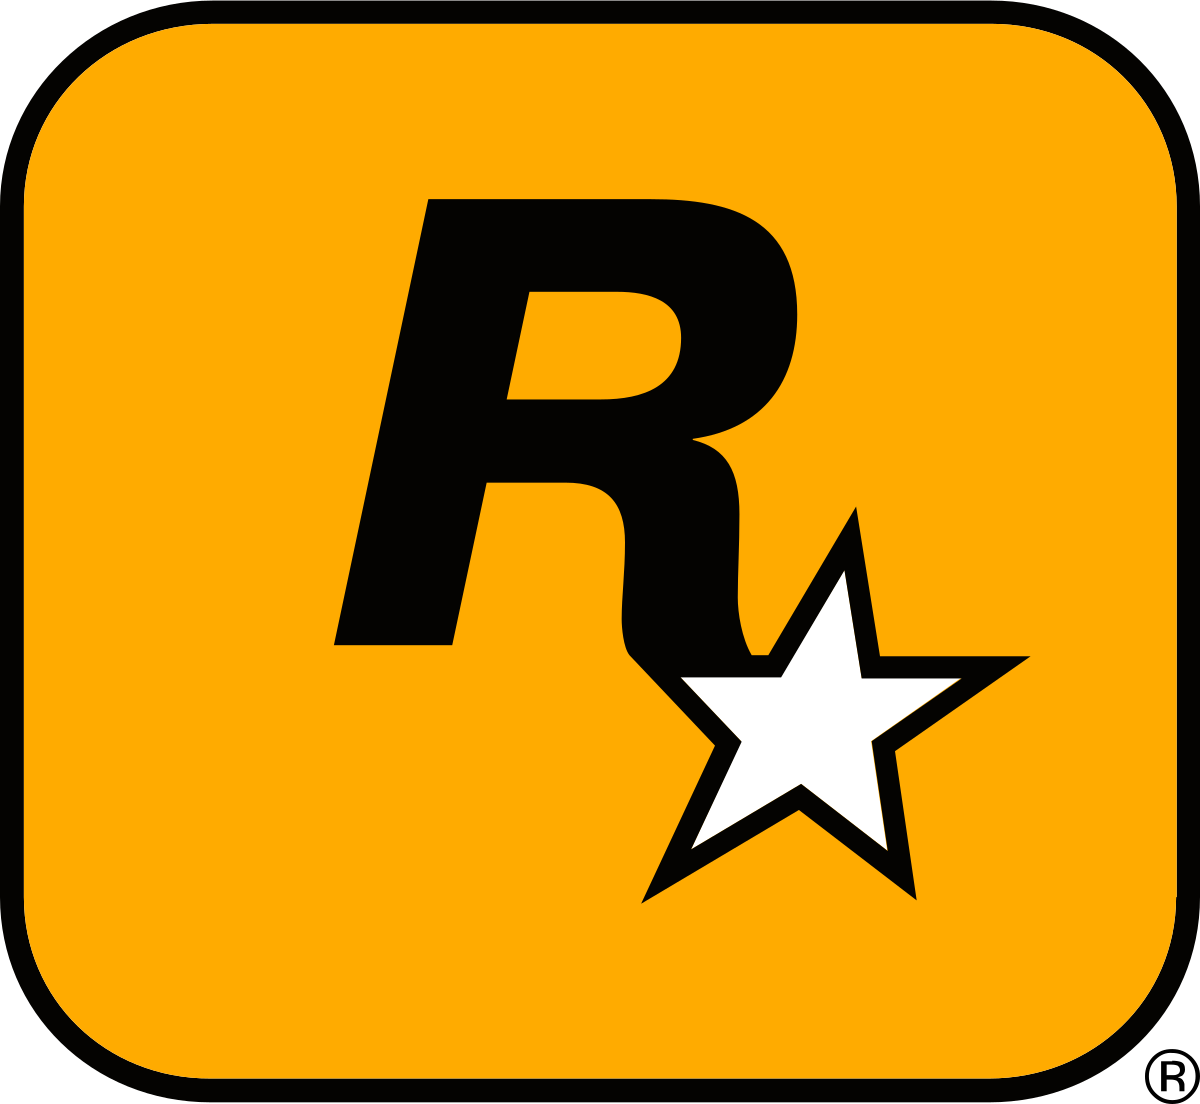 Rockstar, in lavorazione un open world tripla A in VR